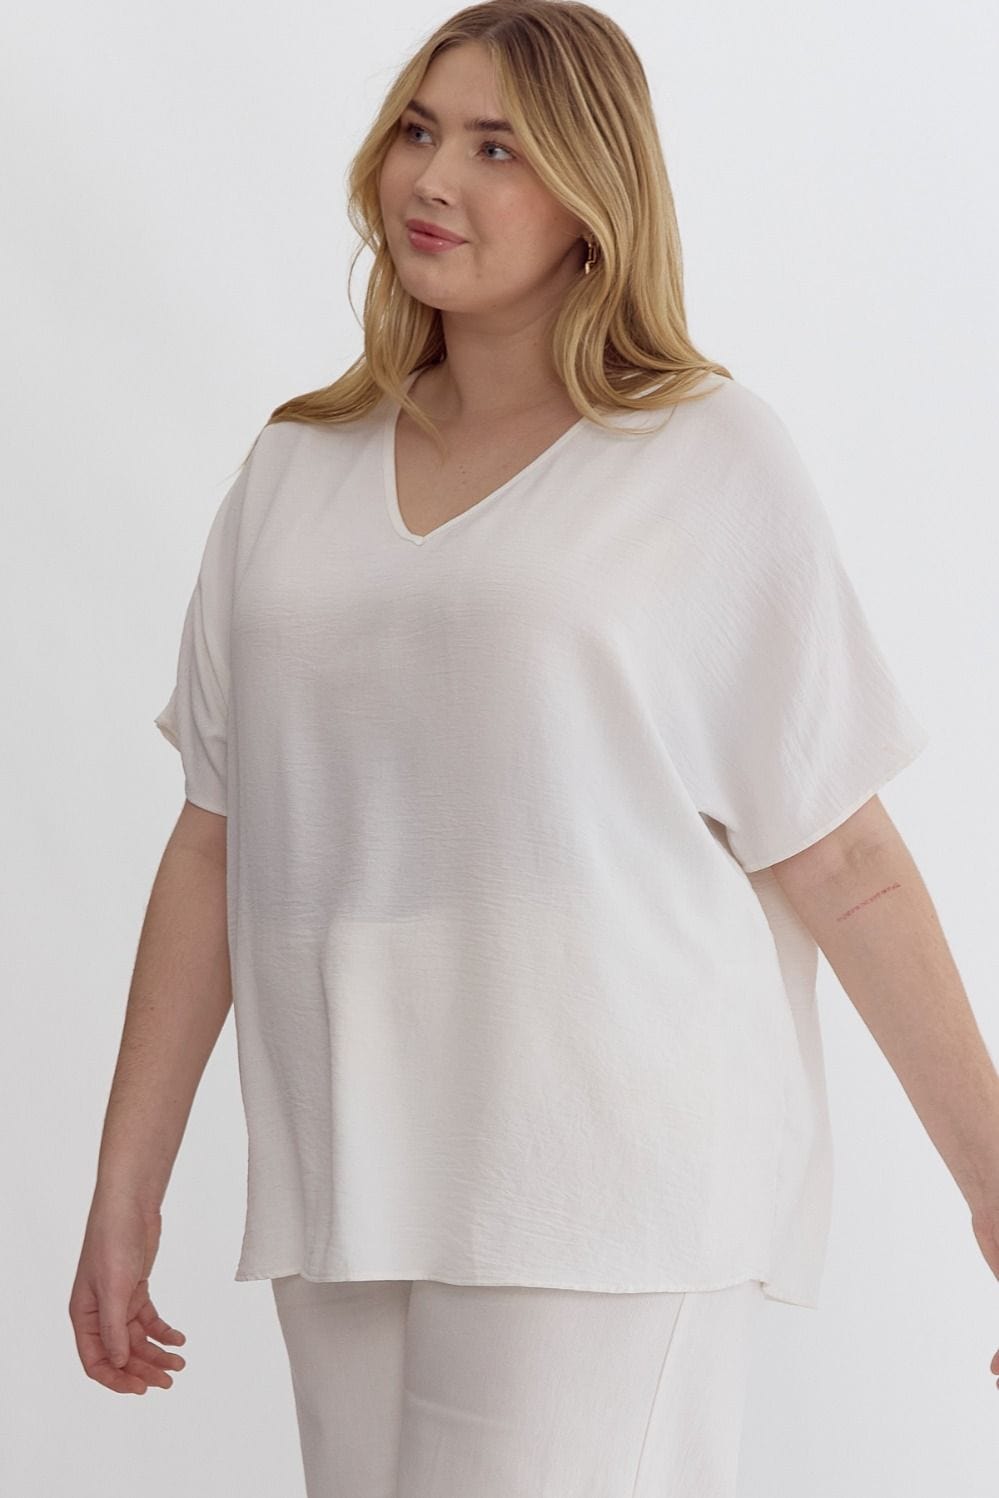 White V-Neck Short Sleeve Top | XL-2X Entro Plus Size XL